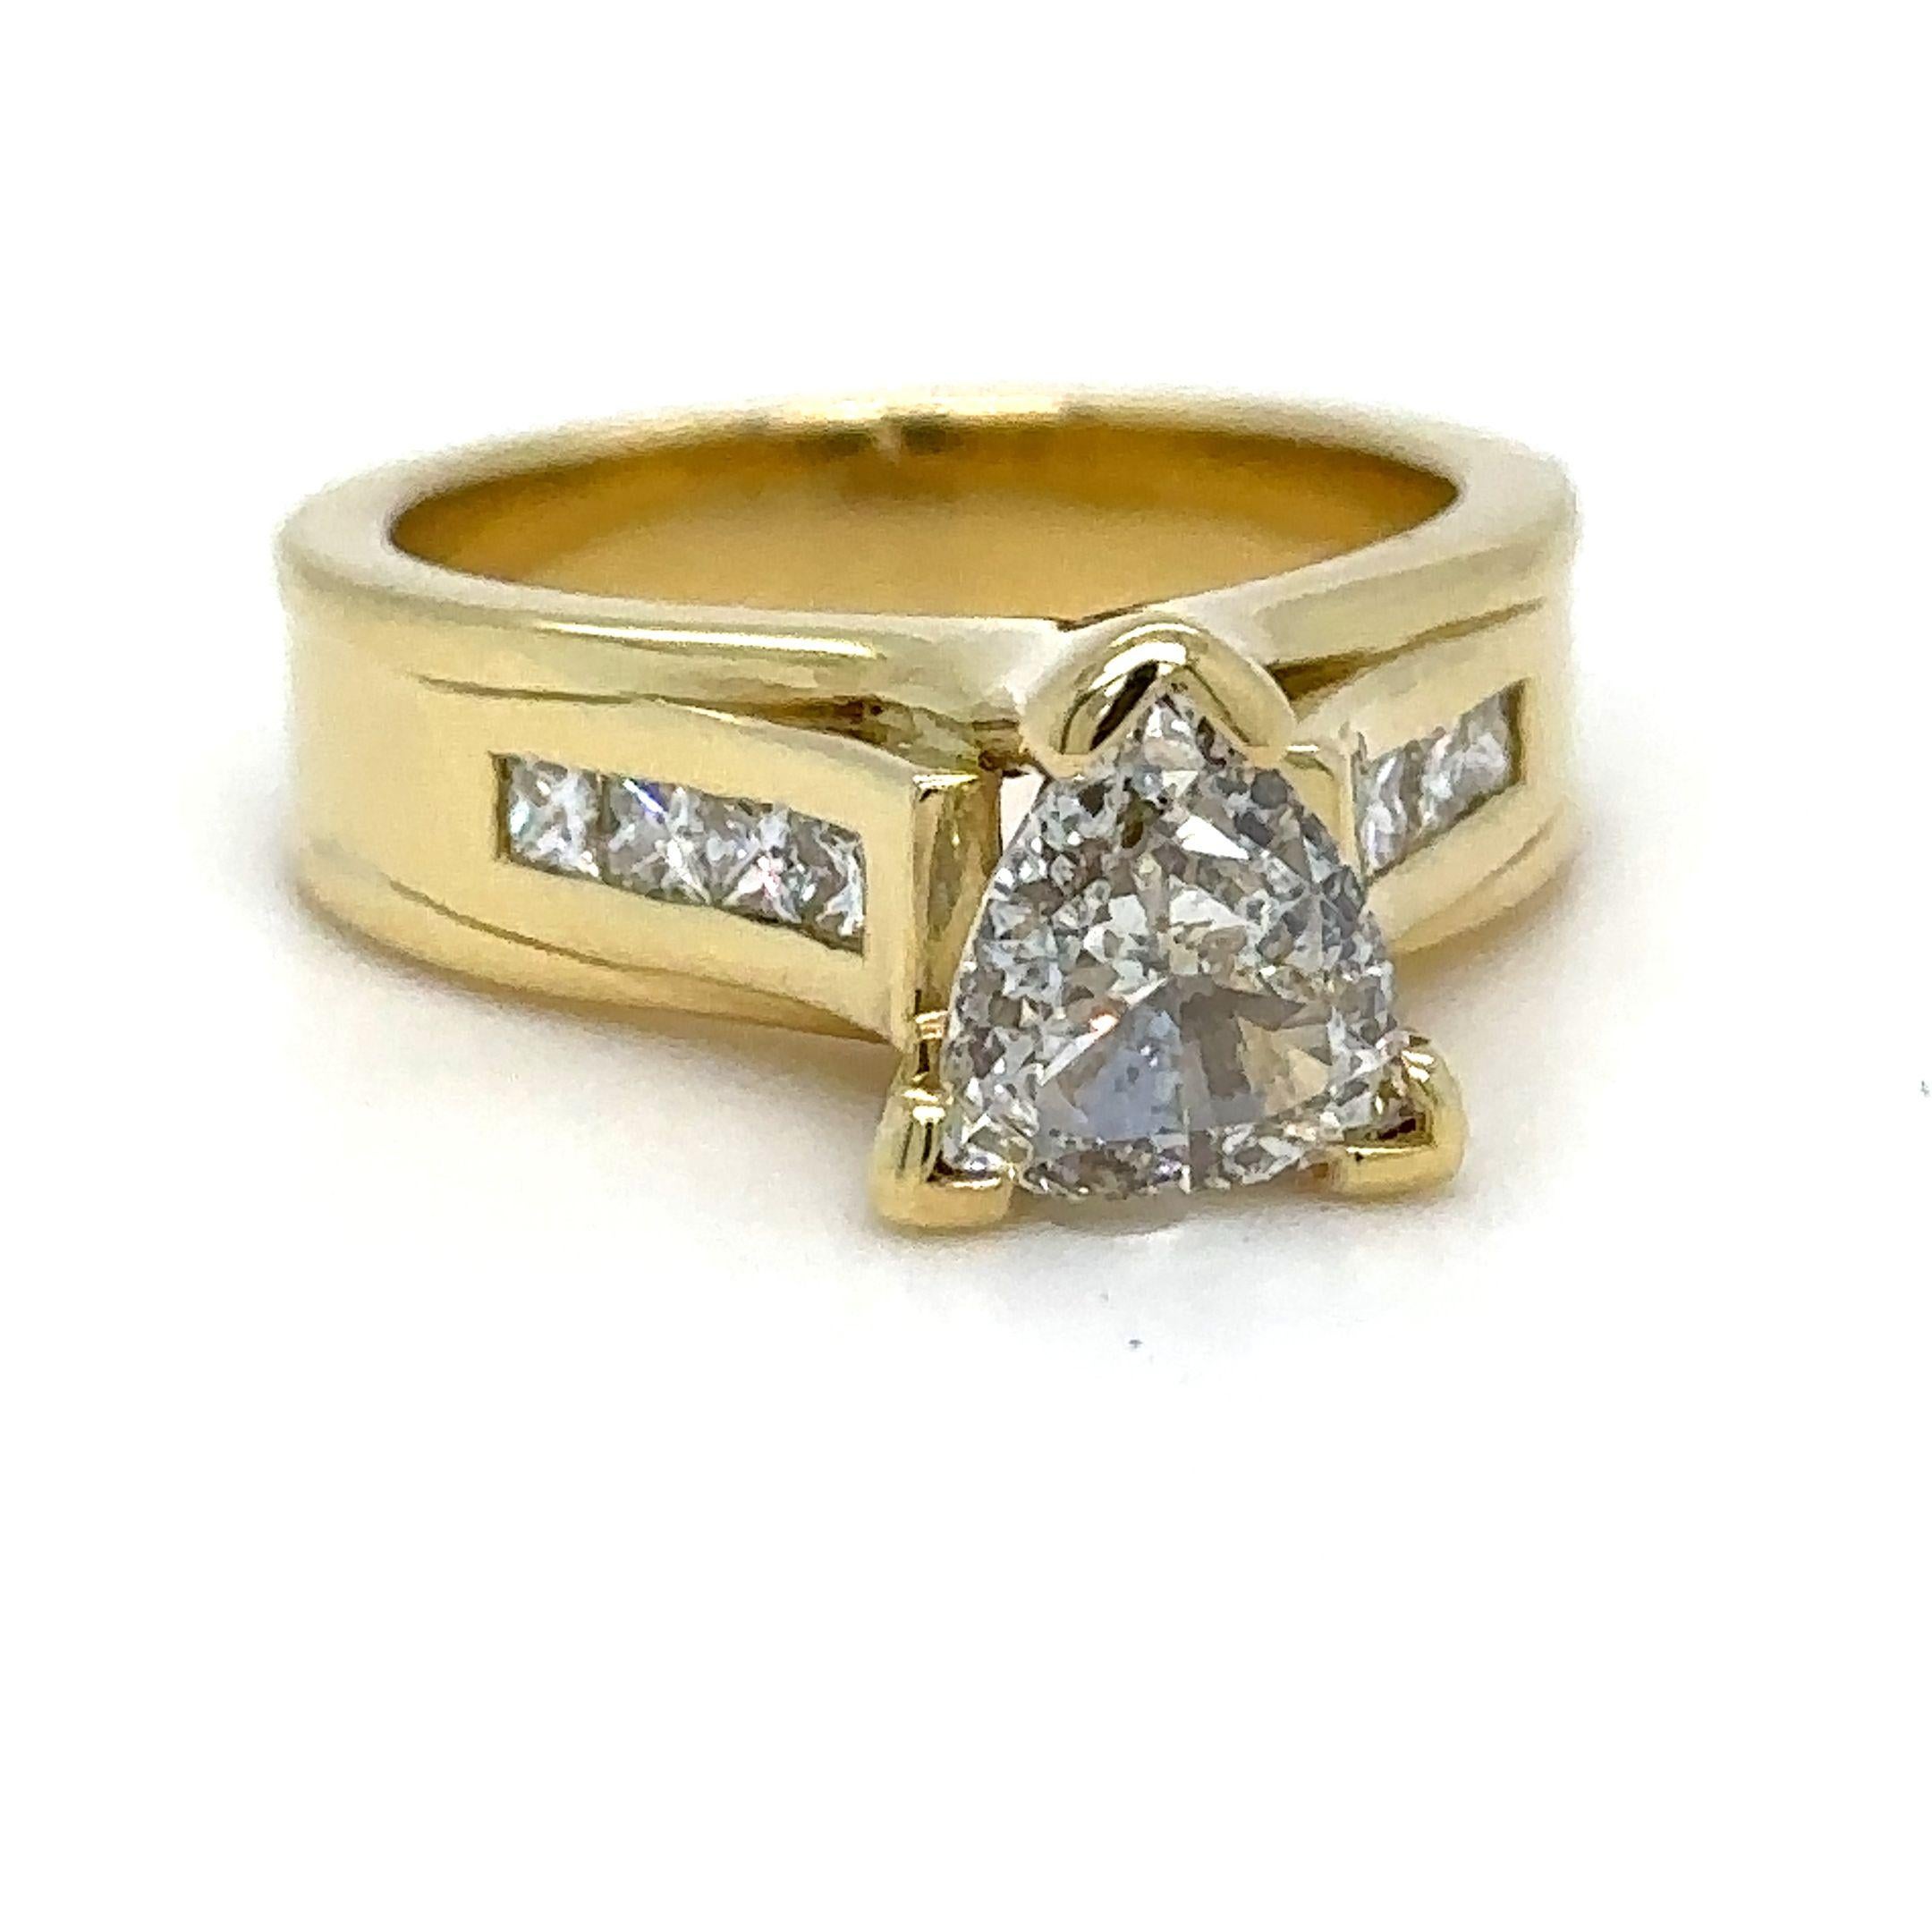 Ein diamantener Verlobungsring aus 18-karätigem Gelbgold mit der Ringgröße M und einem Gewicht von 10 g. Gestempelt: 750.

Besetzt mit einem einzelnen Diamanten im Brillantschliff, Farbe G und Reinheit SI1. Mit einem Gewicht von 1.00 ct. Das